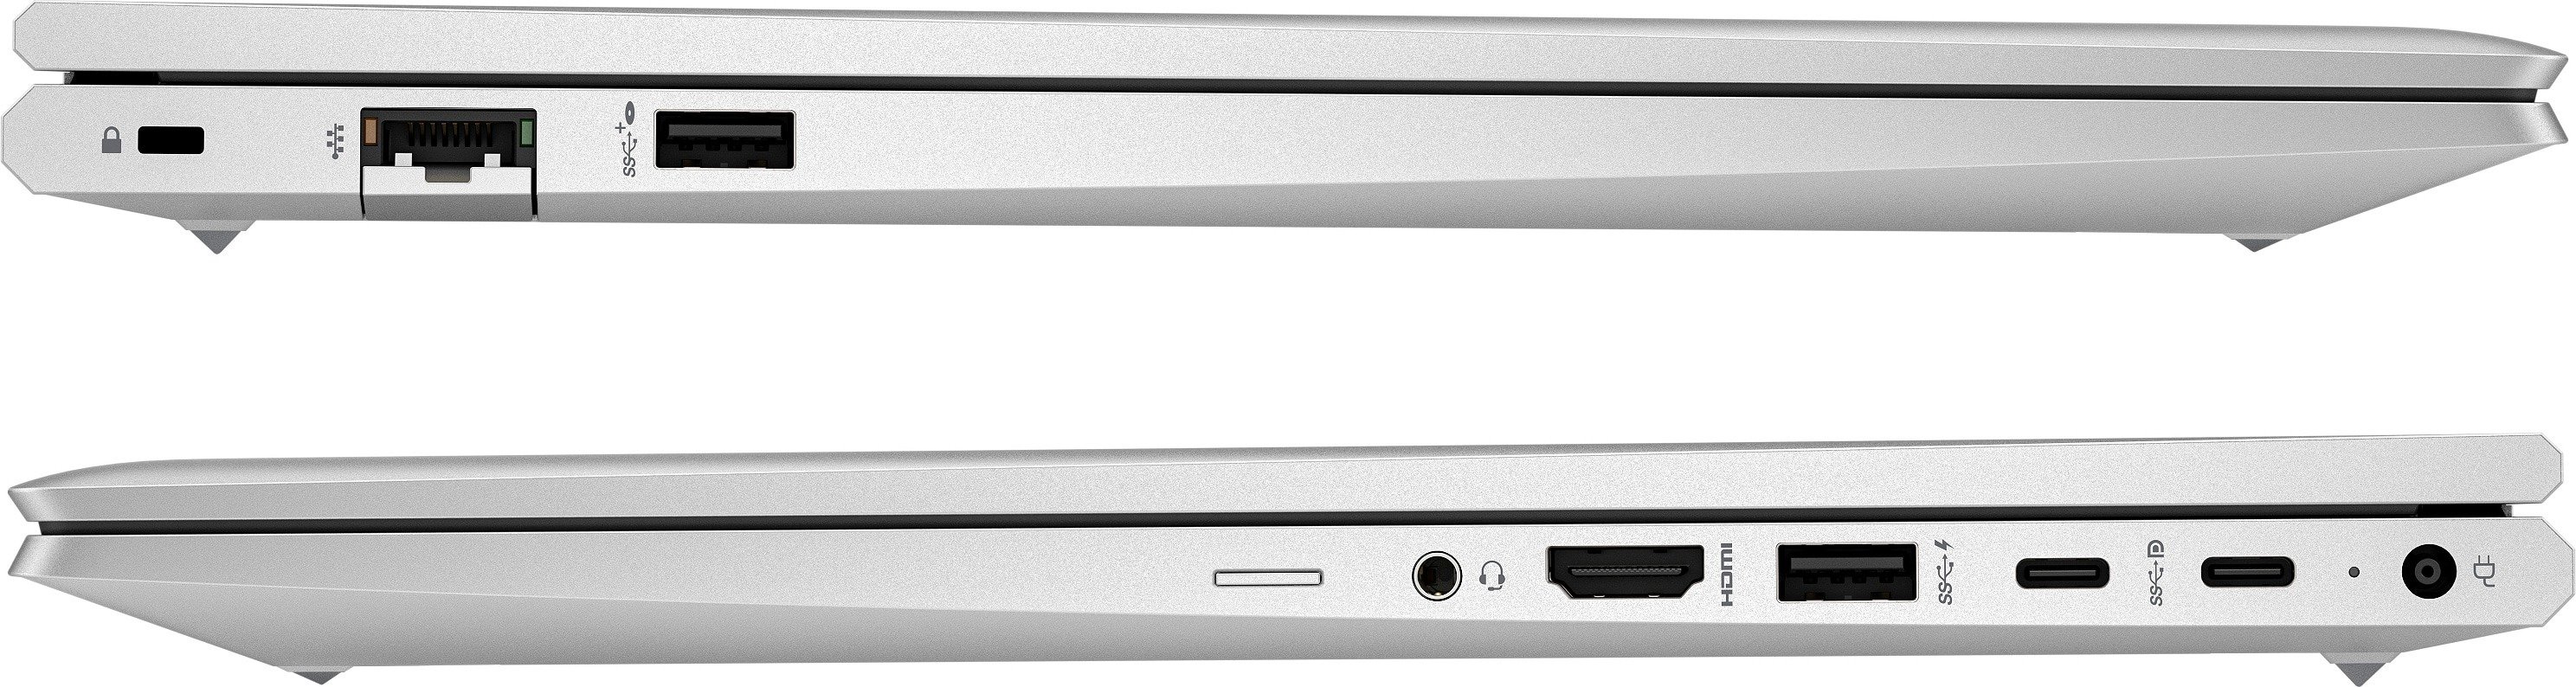 Ноутбук HP Probook 450-G10 (85C01EA) фото 8